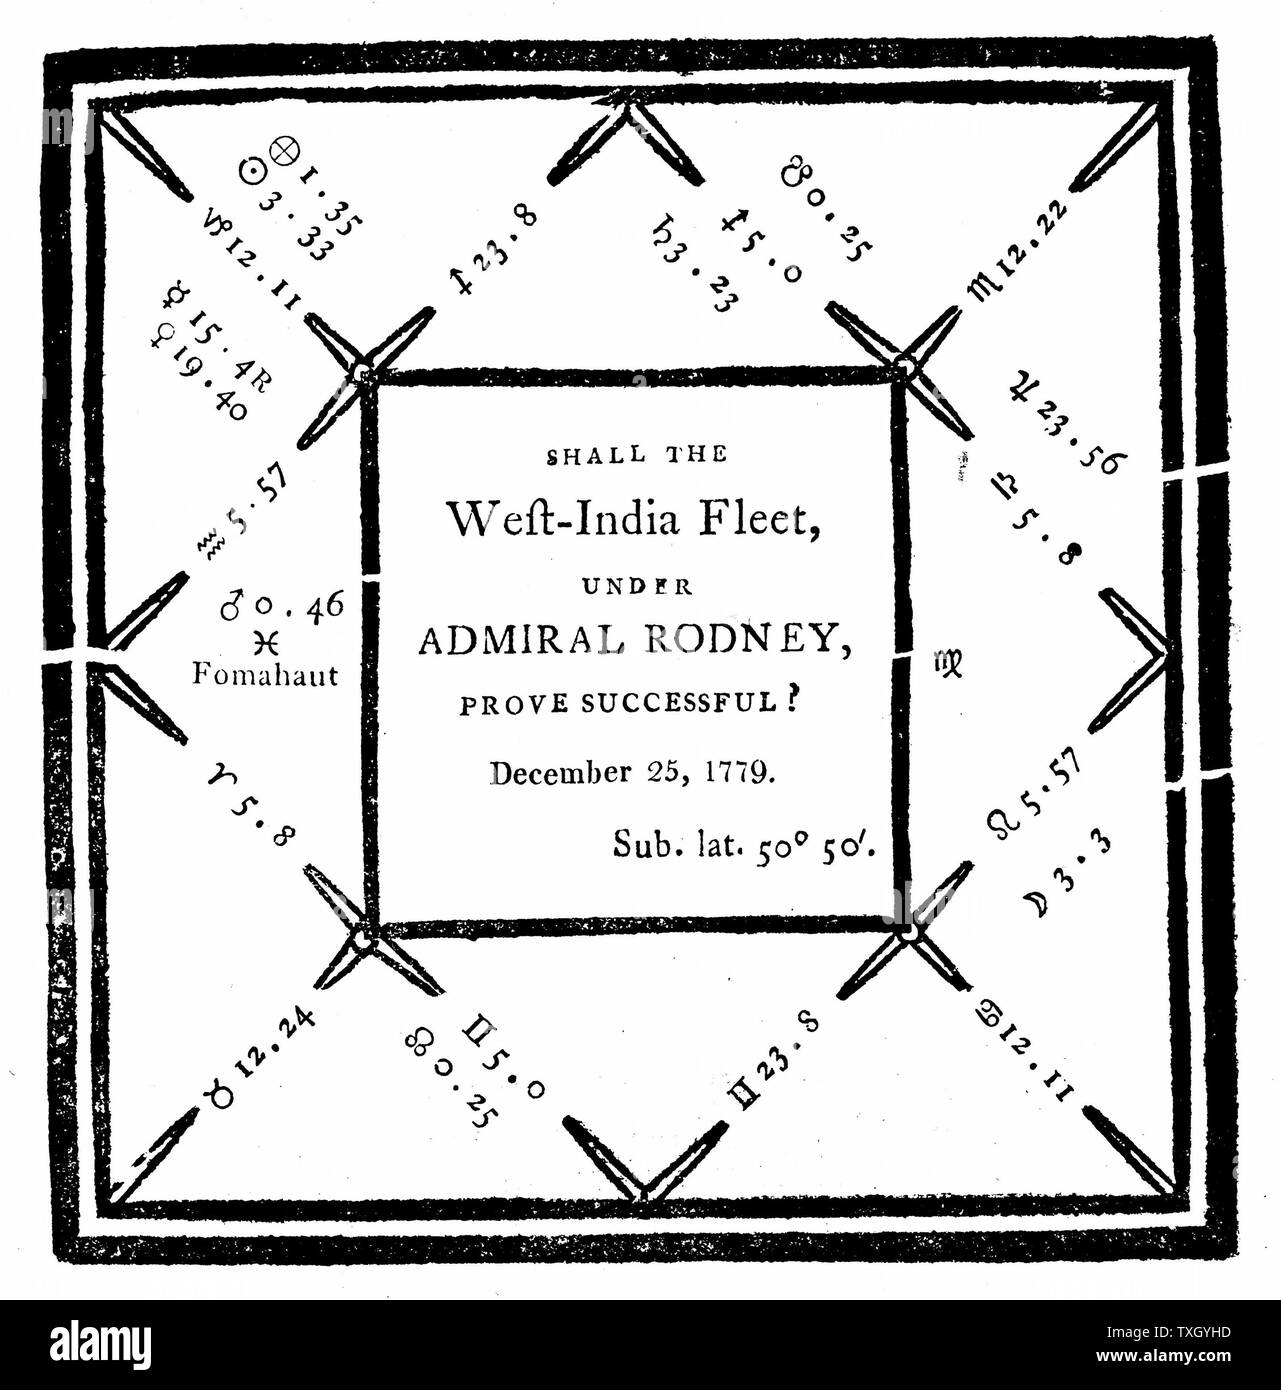 Oroscopo redatto da Ebenezer Sibly nel 1779 su richiesta di 'some naval gentlemen' per prevedere che la British West Indies flotta in Admiral Rodney sarebbe vittoriosa Foto Stock